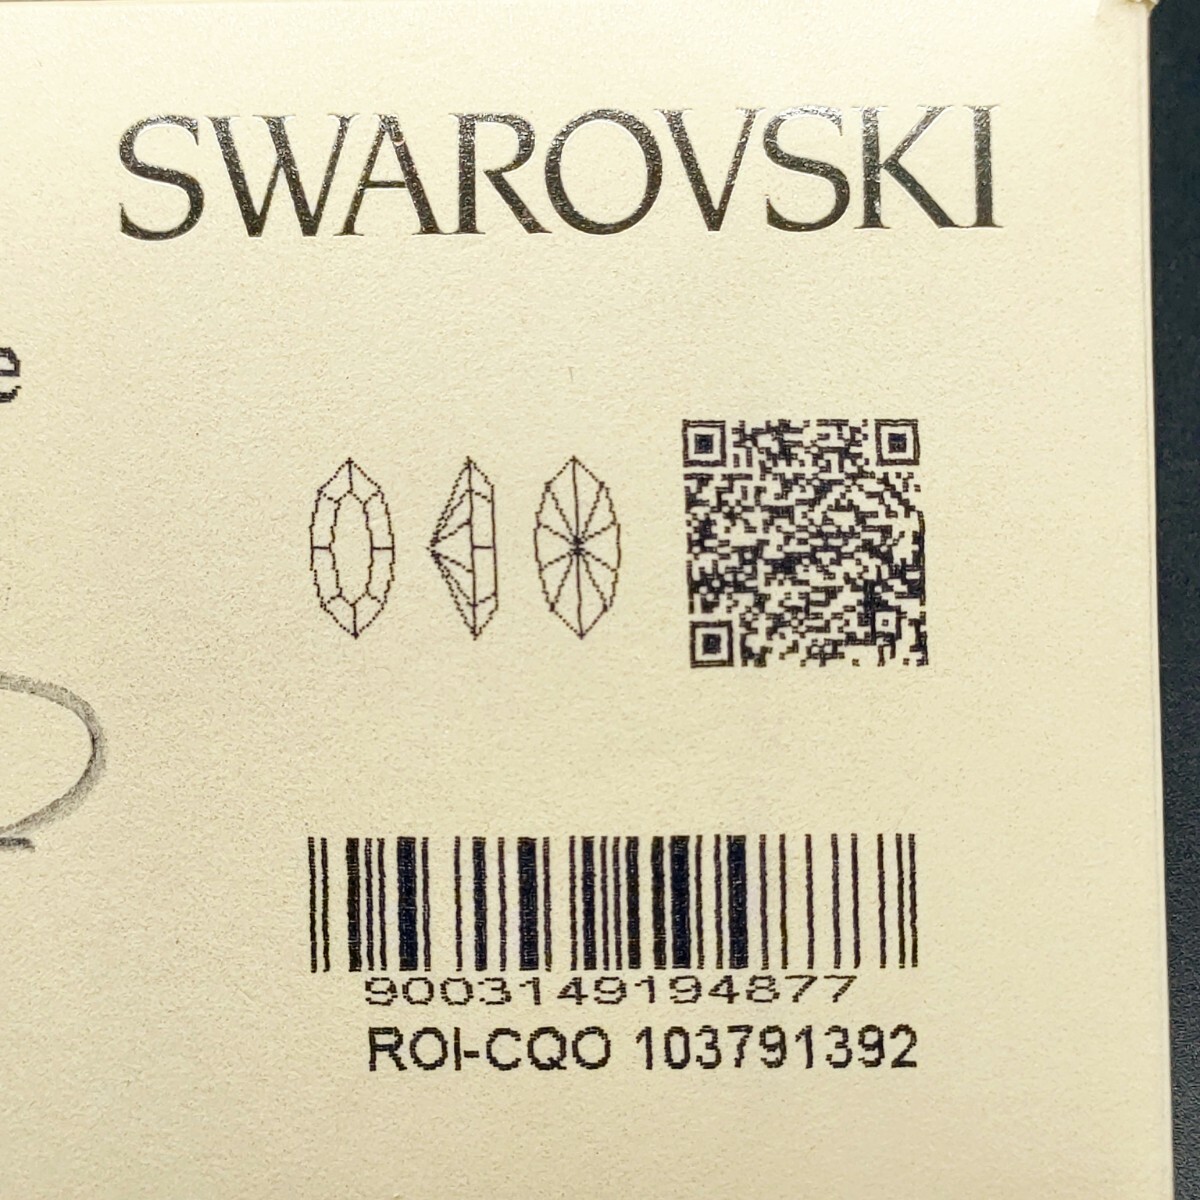 * почти не использовался Swarovski SWAROVSKI разрозненный 4228 15×7mm Siam автомобиль m208 XILION Navettesili on naveto110 шт камни не в изделии 21